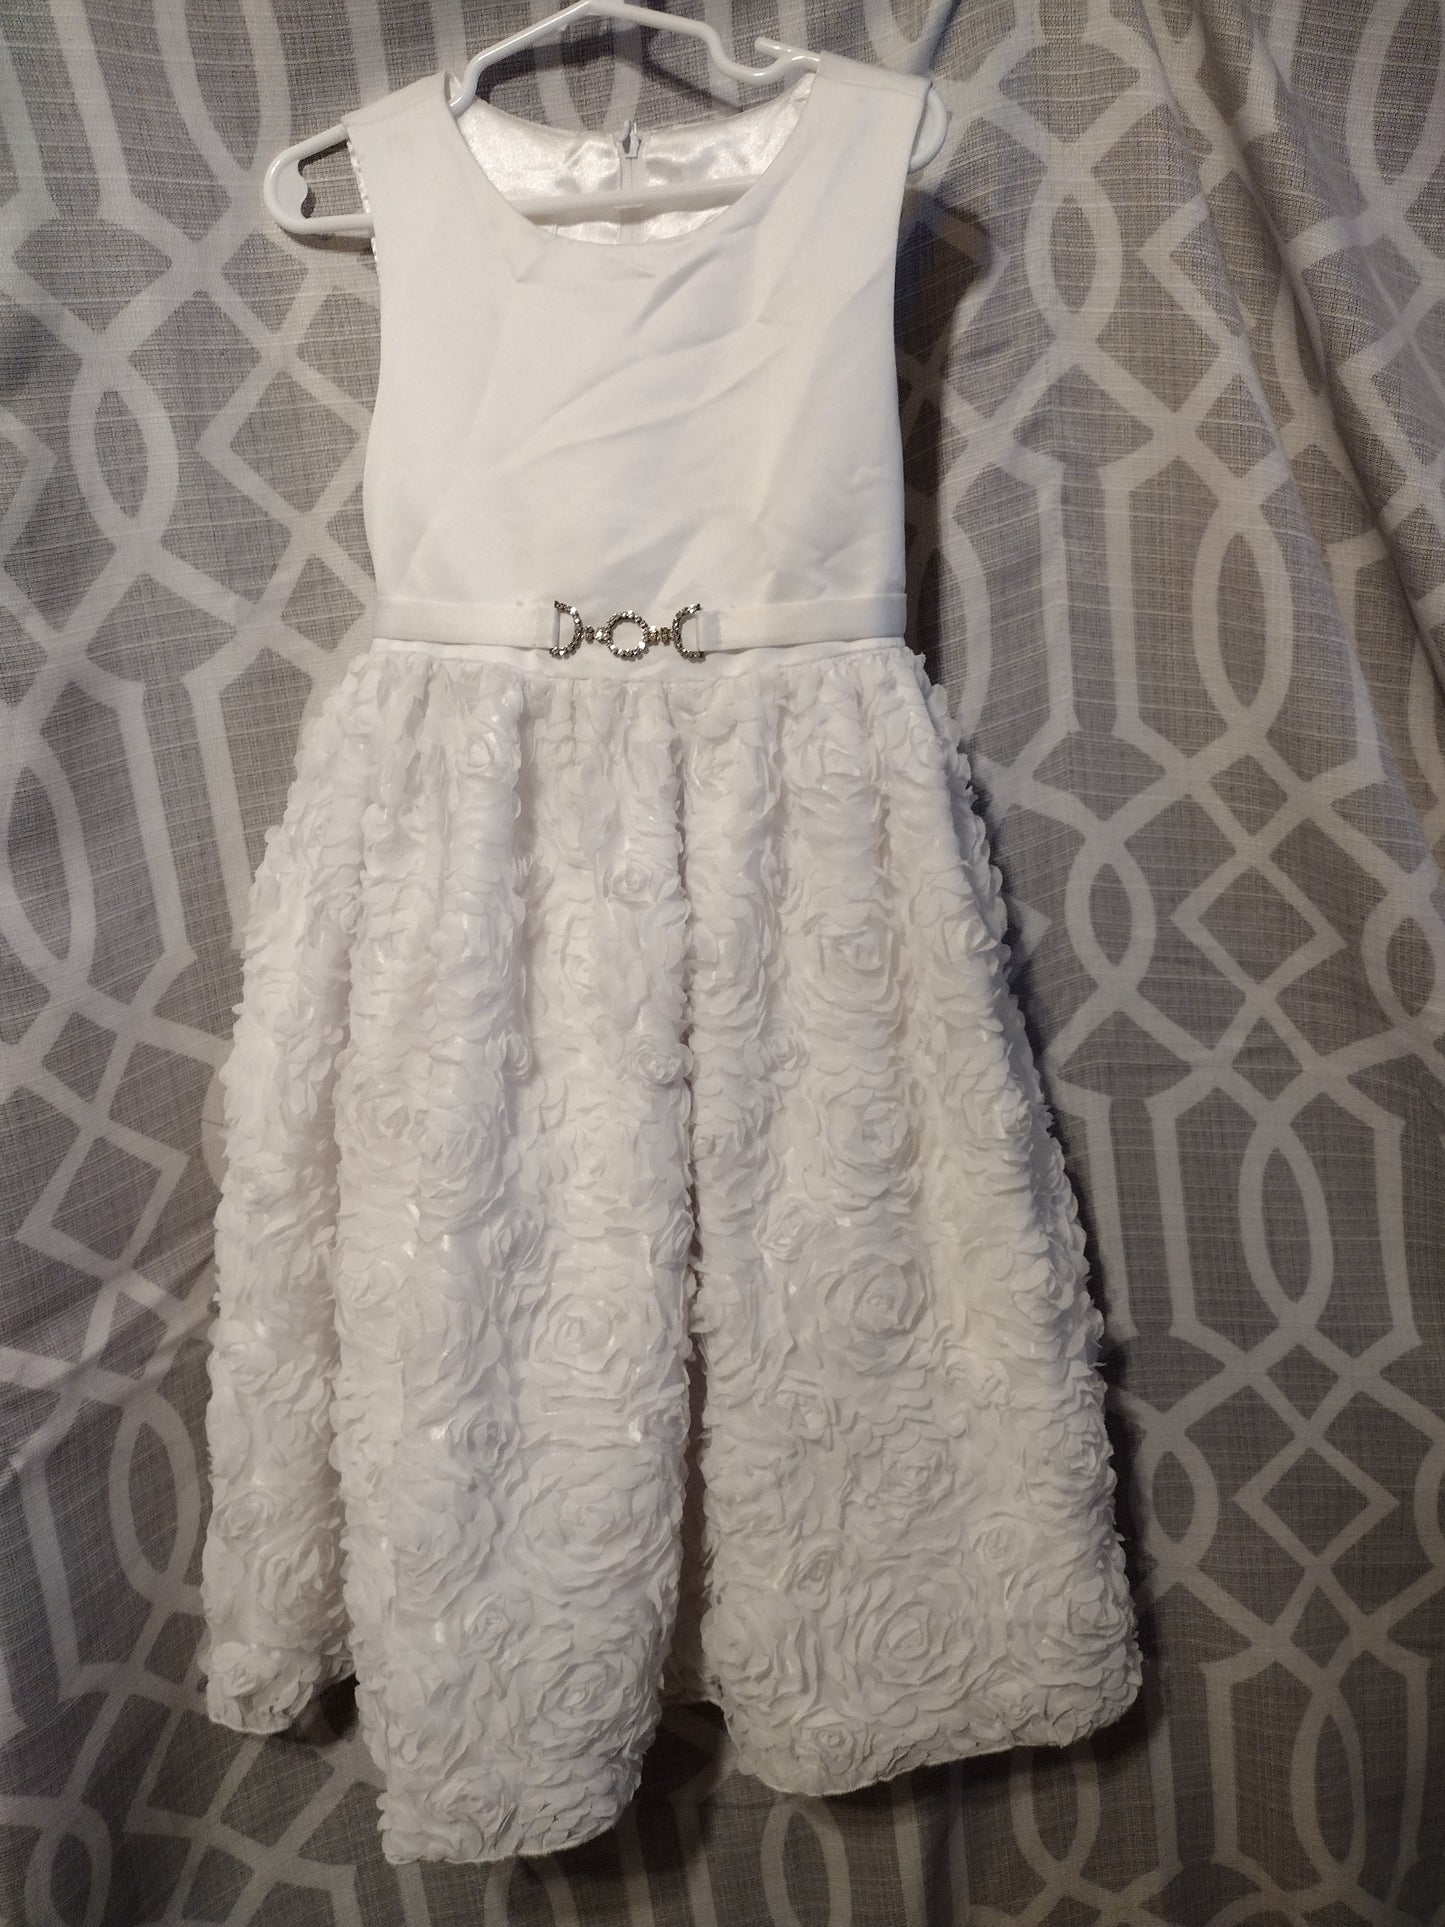 Little girl white dress 6X